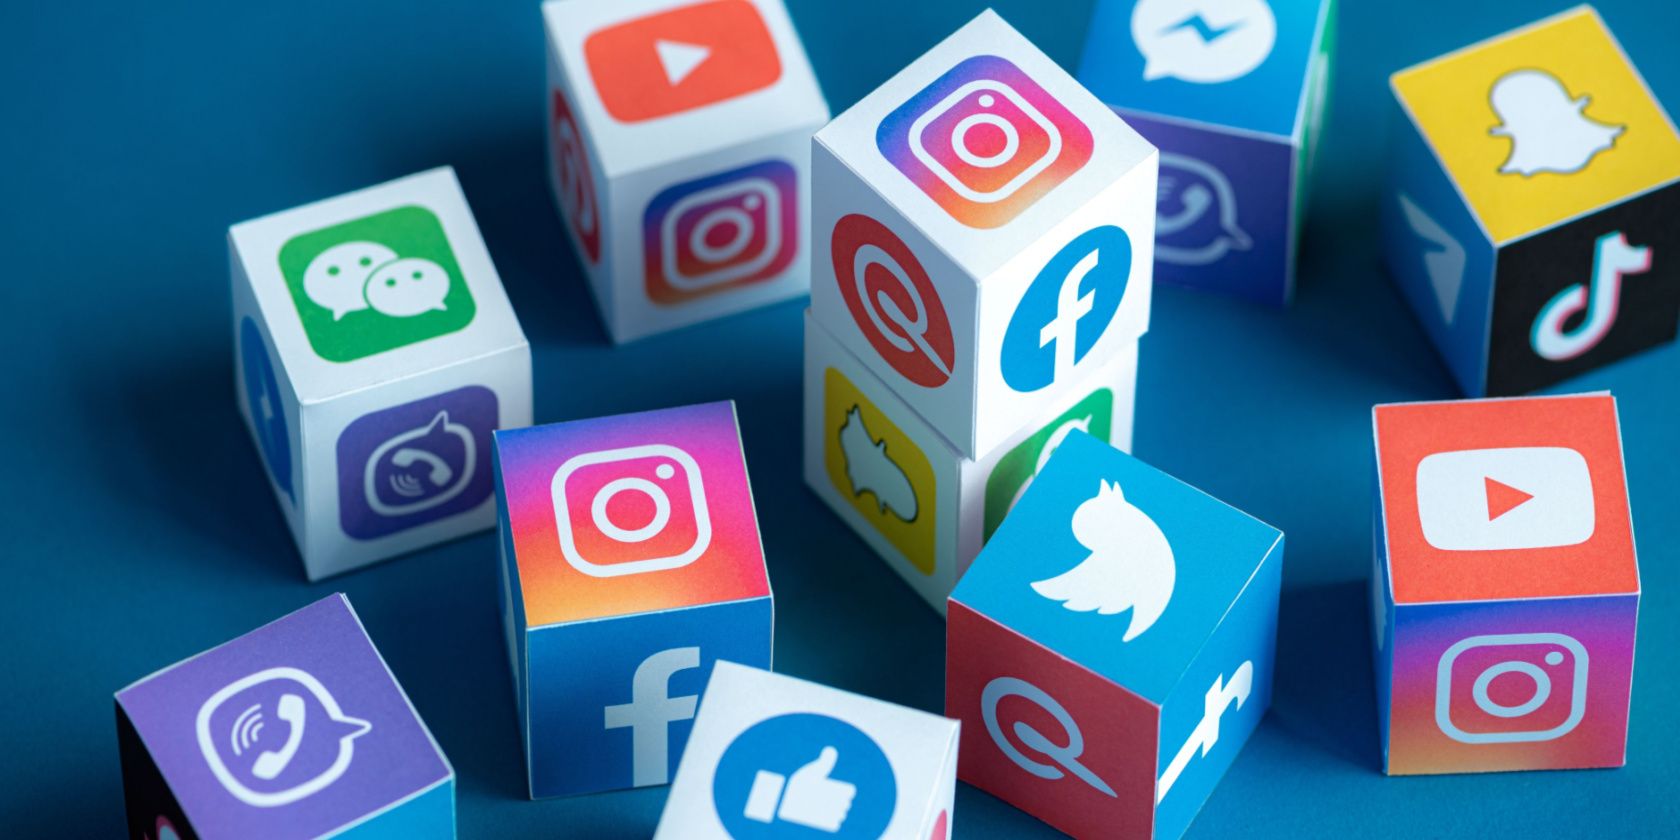 social media logos on cubes